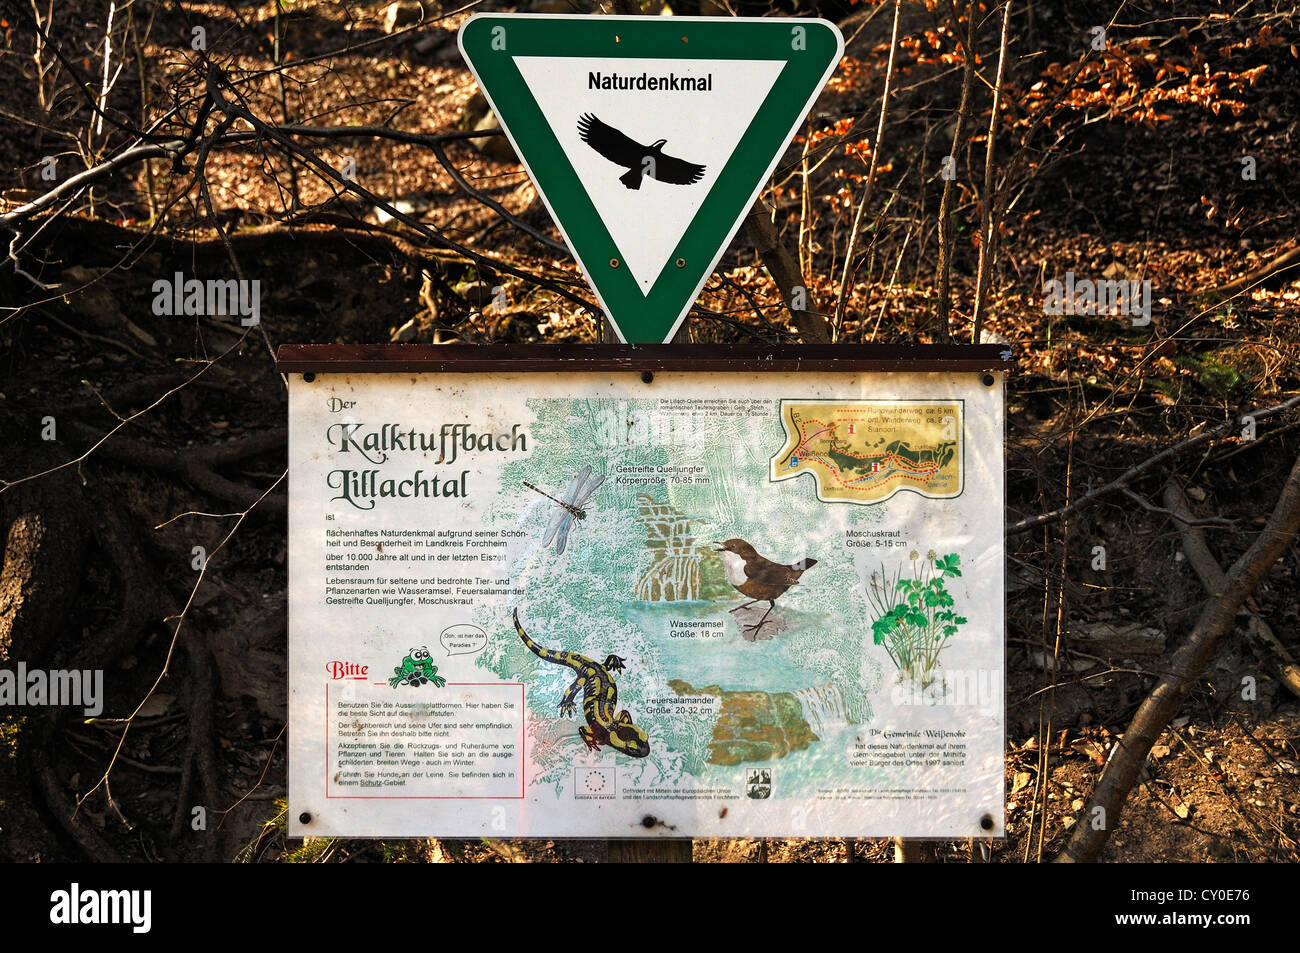 Scheda di informazioni circa la Kalktuffbach creek e gli animali che vivono nella Lillingquelle area di conservazione, Dorfhaus Foto Stock